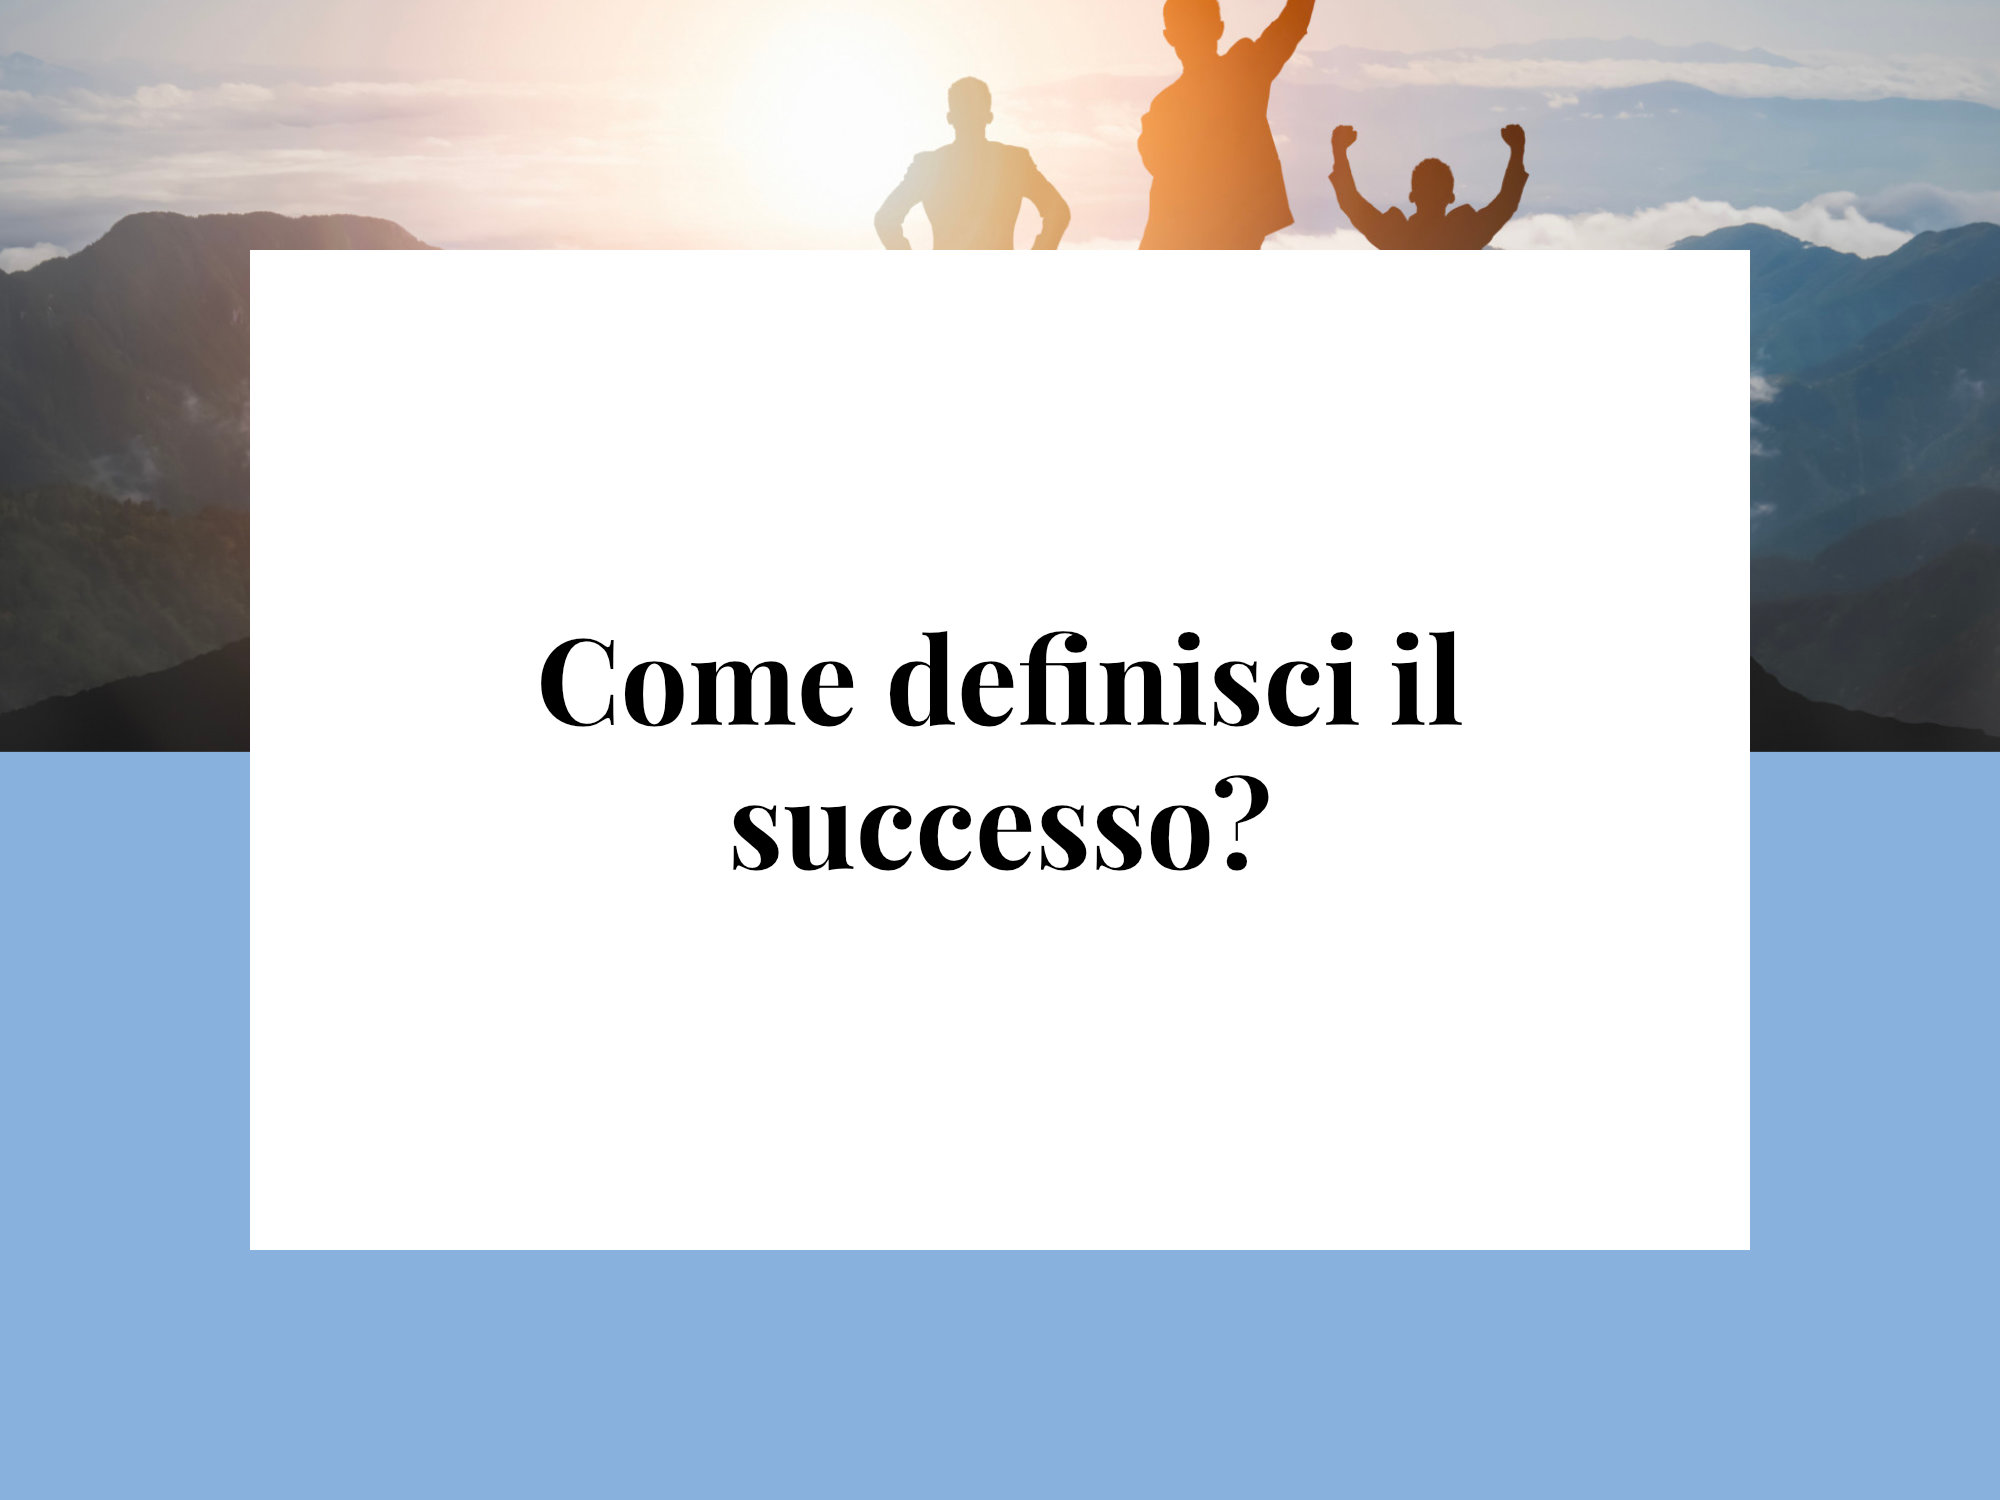 Come definisci il successo?